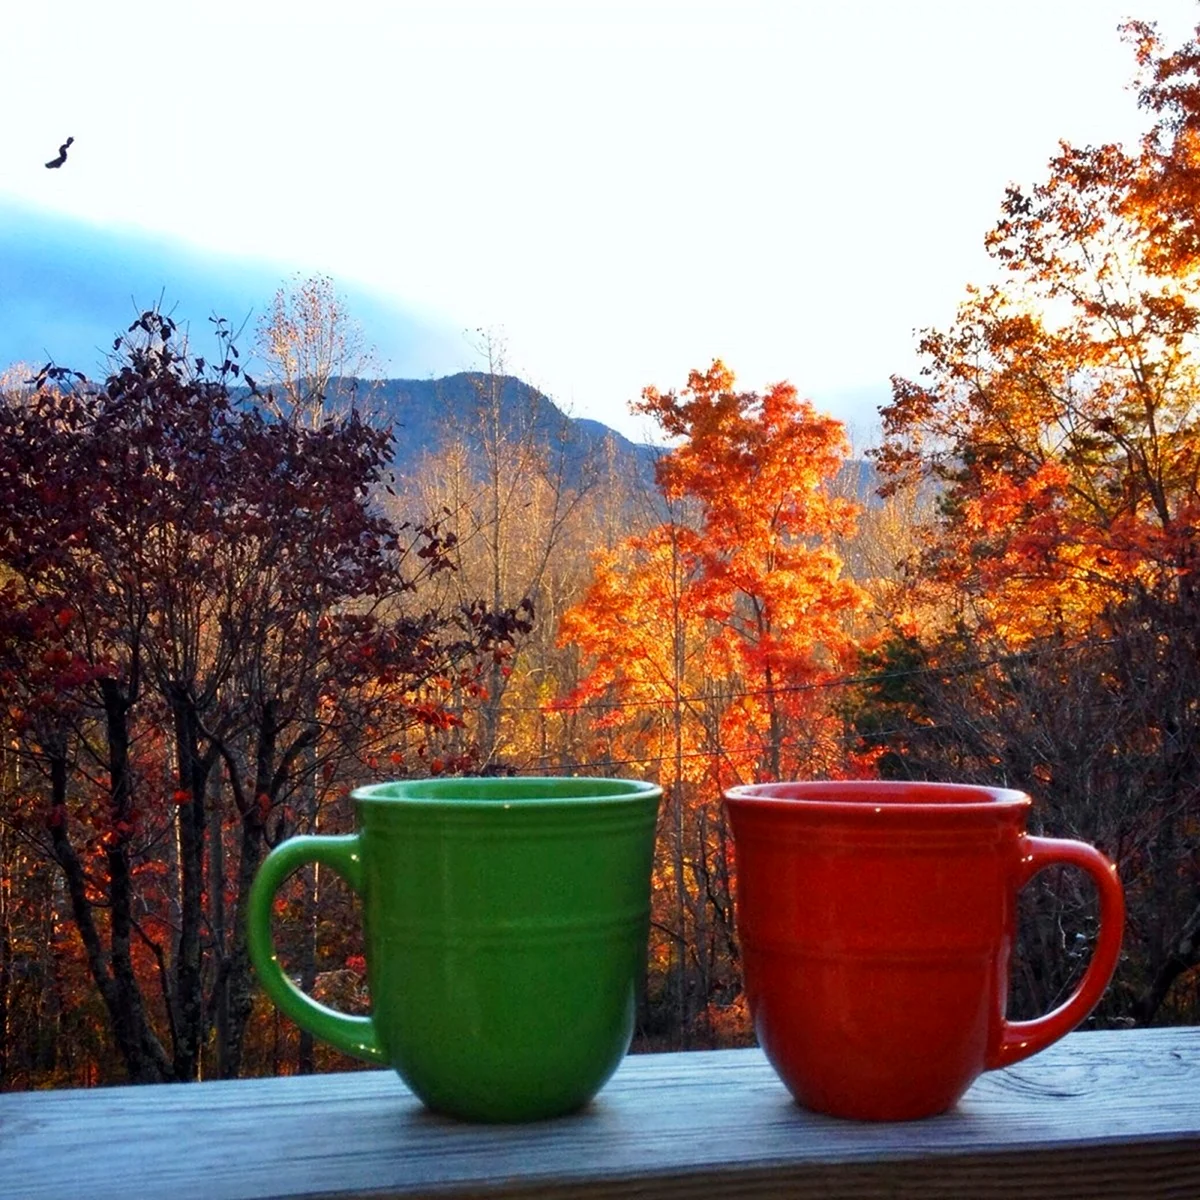 Осенний чай